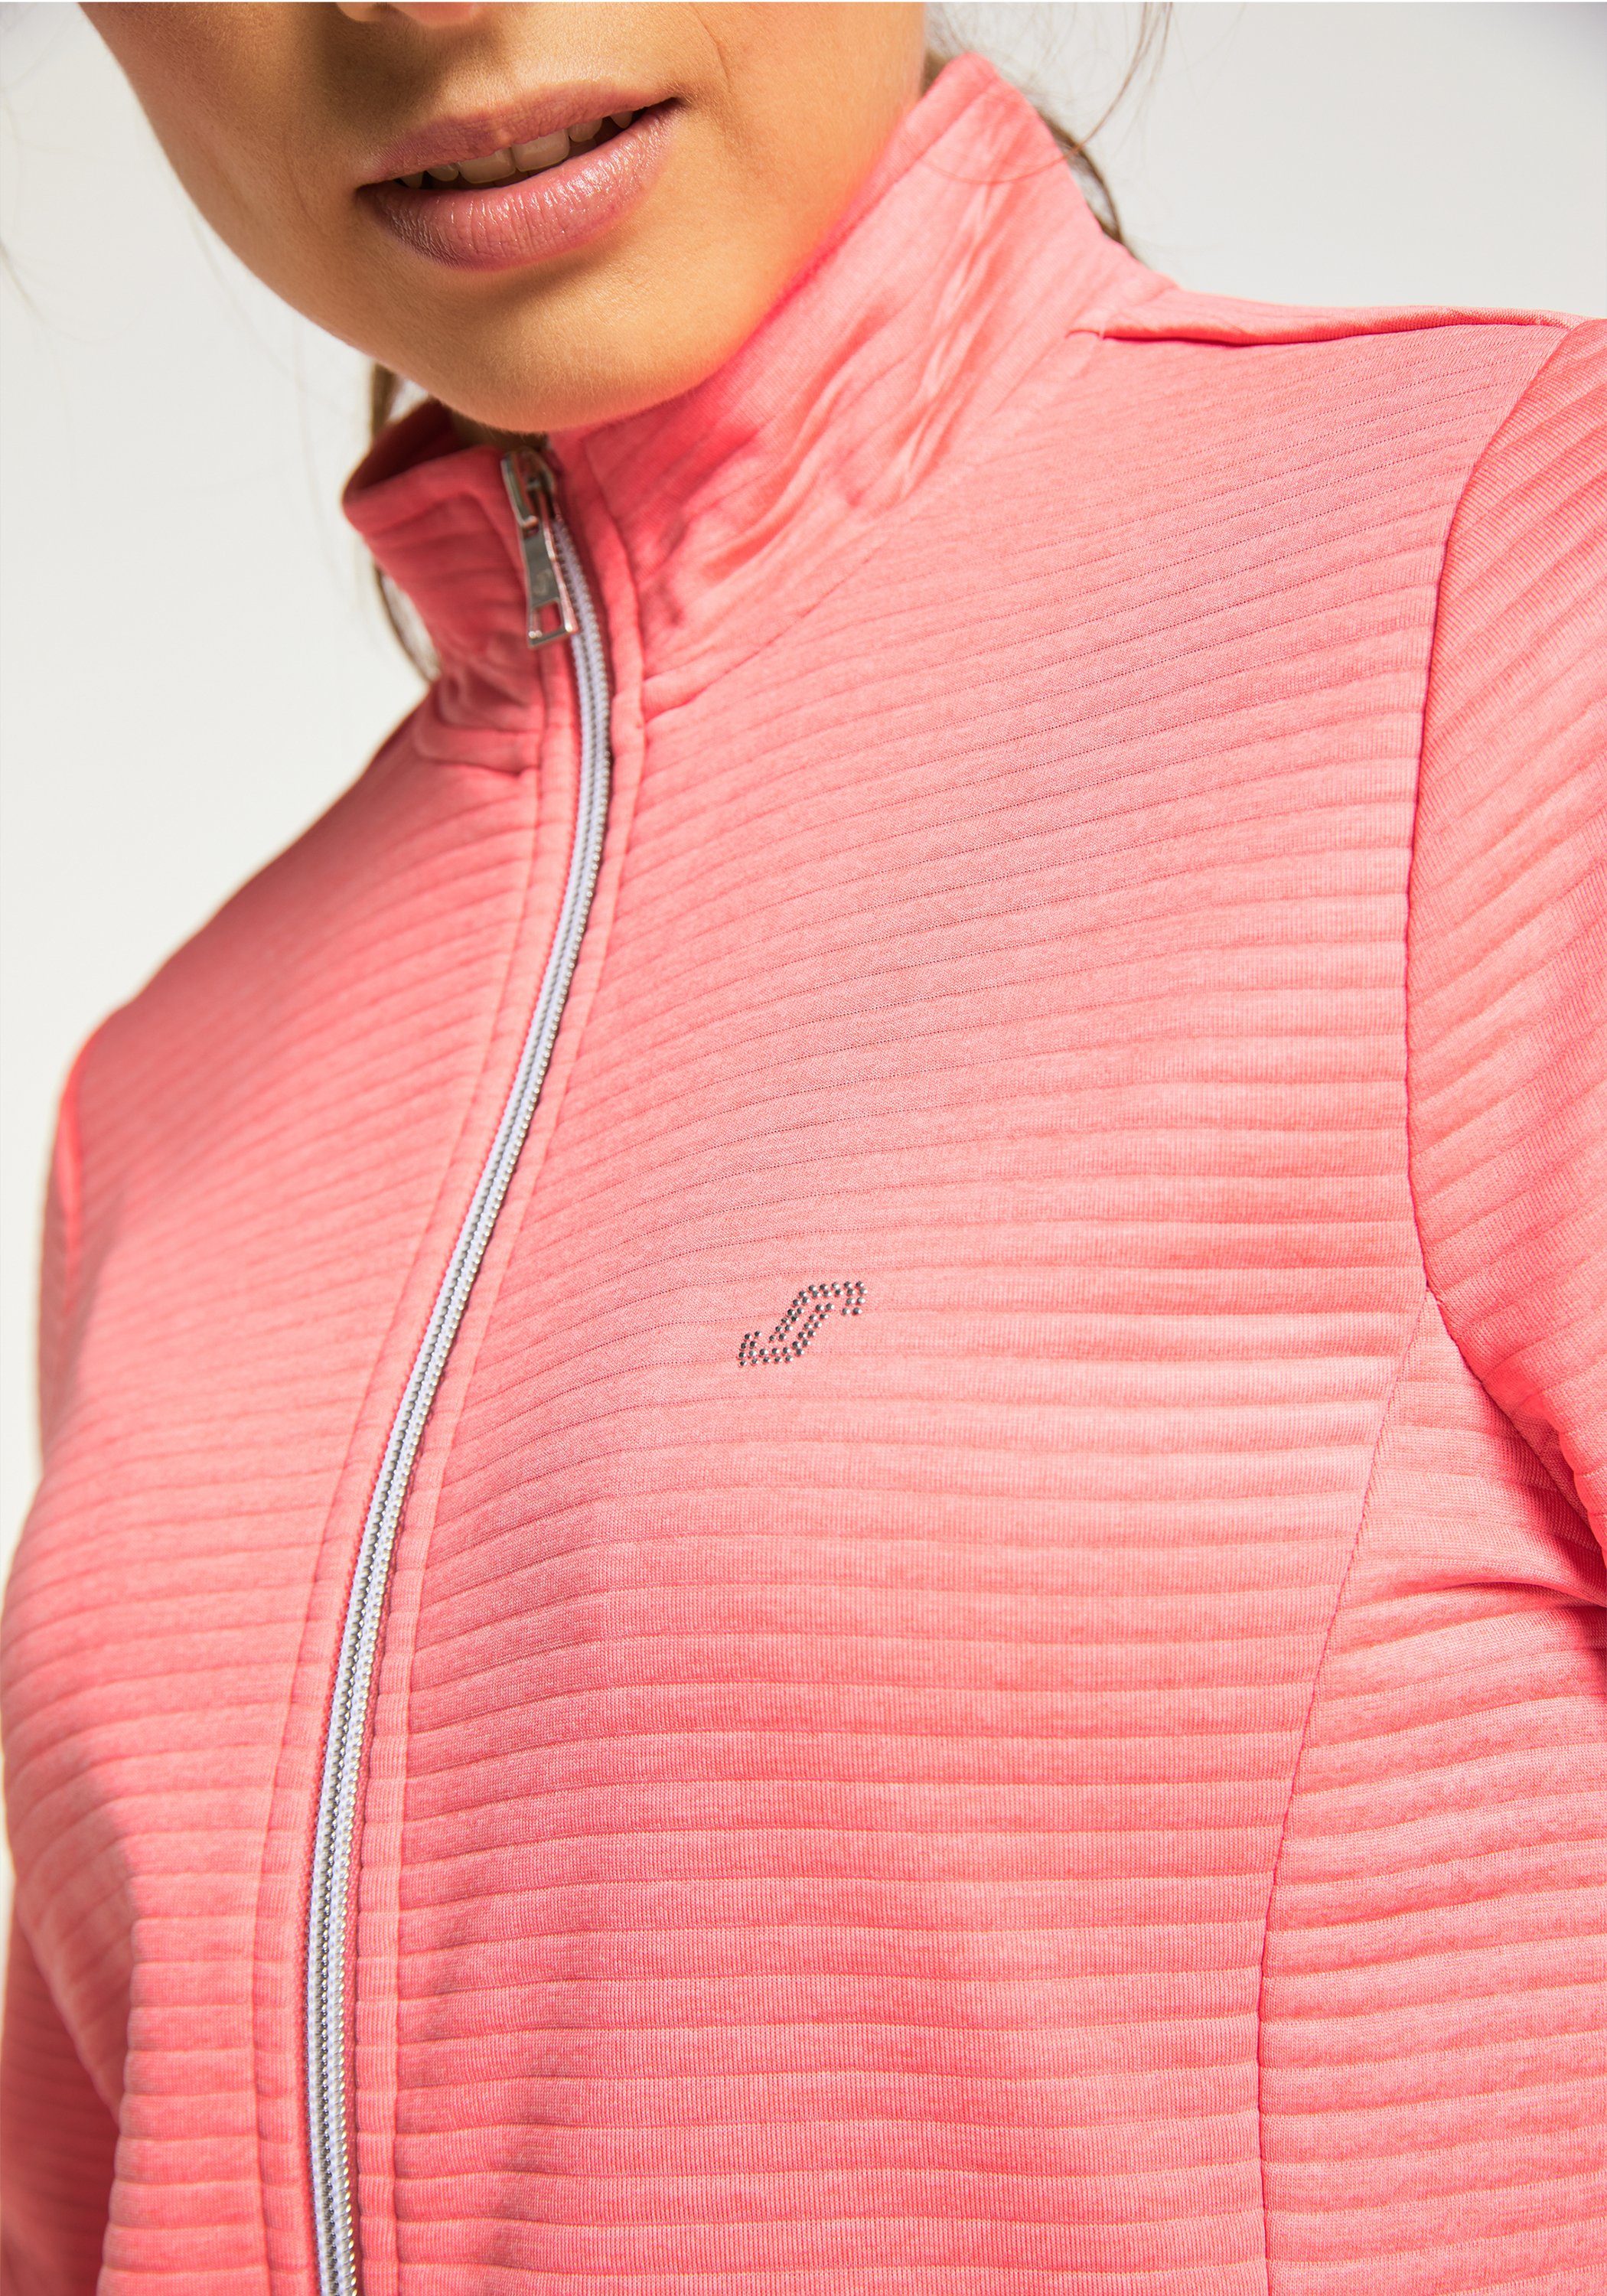 coral Joy melange PEGGY Jacke Trainingsjacke pink Sportswear